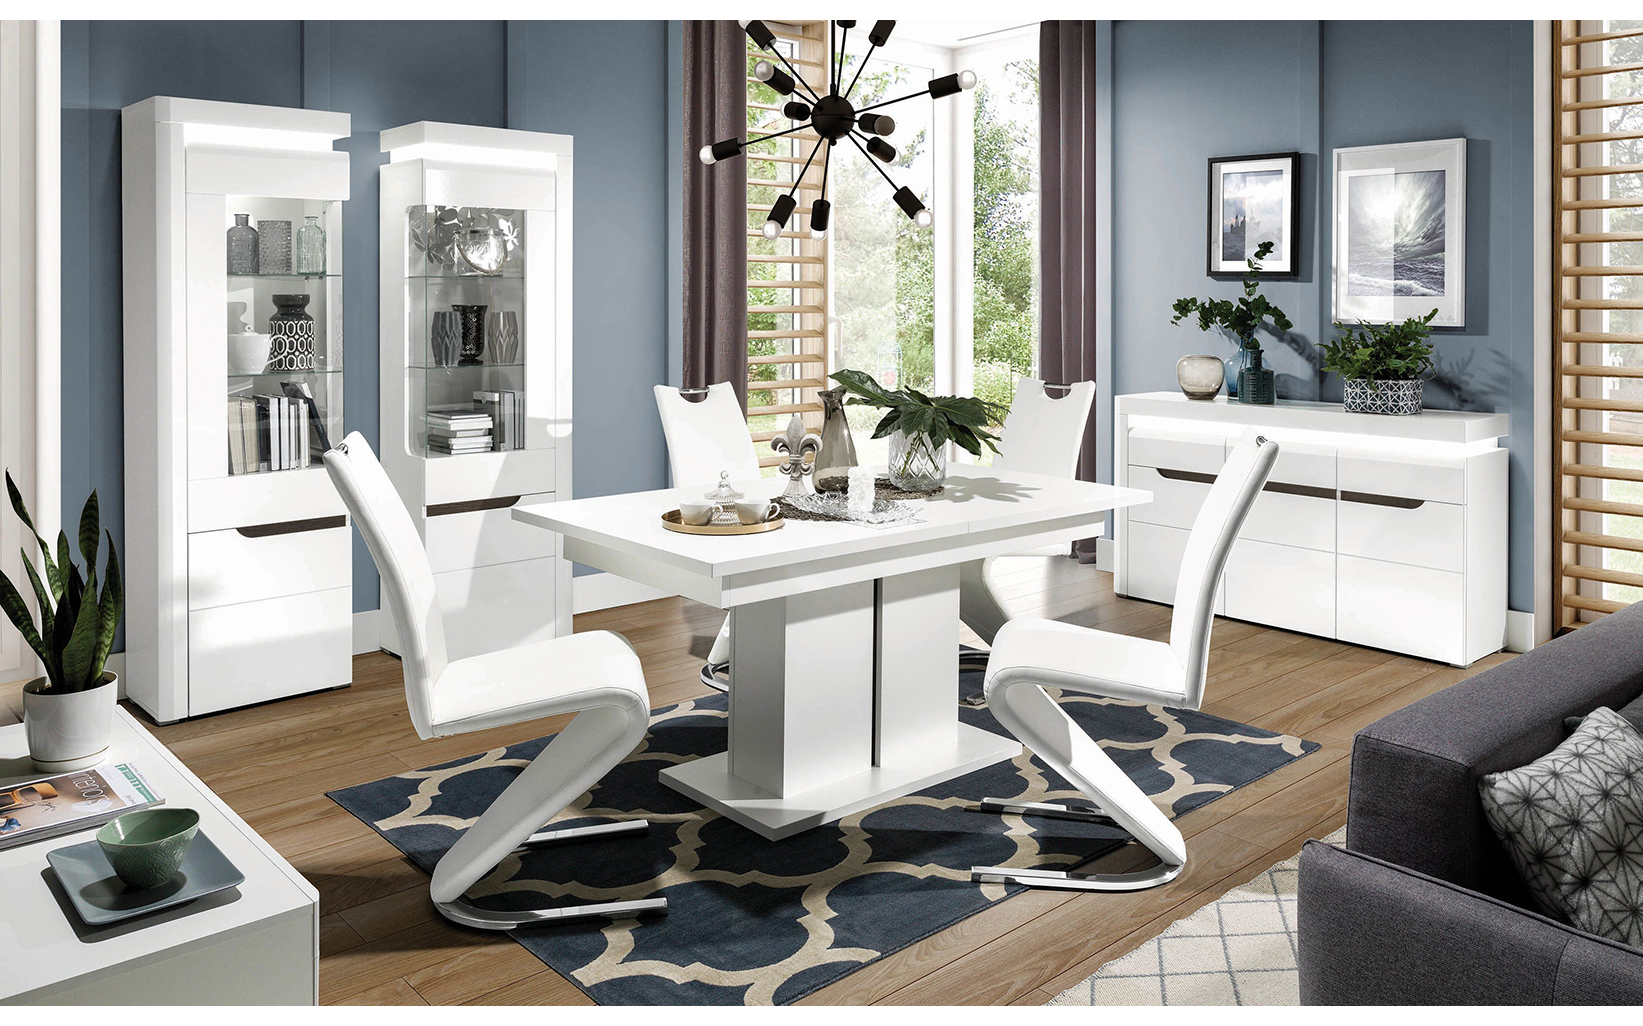 Какие стулья выбрать, которые в каждой квартире от нескольких до даже десятка штук, чтобы соответствовать предположениям простого стиля, но при этом выглядеть привлекательно и комфортно